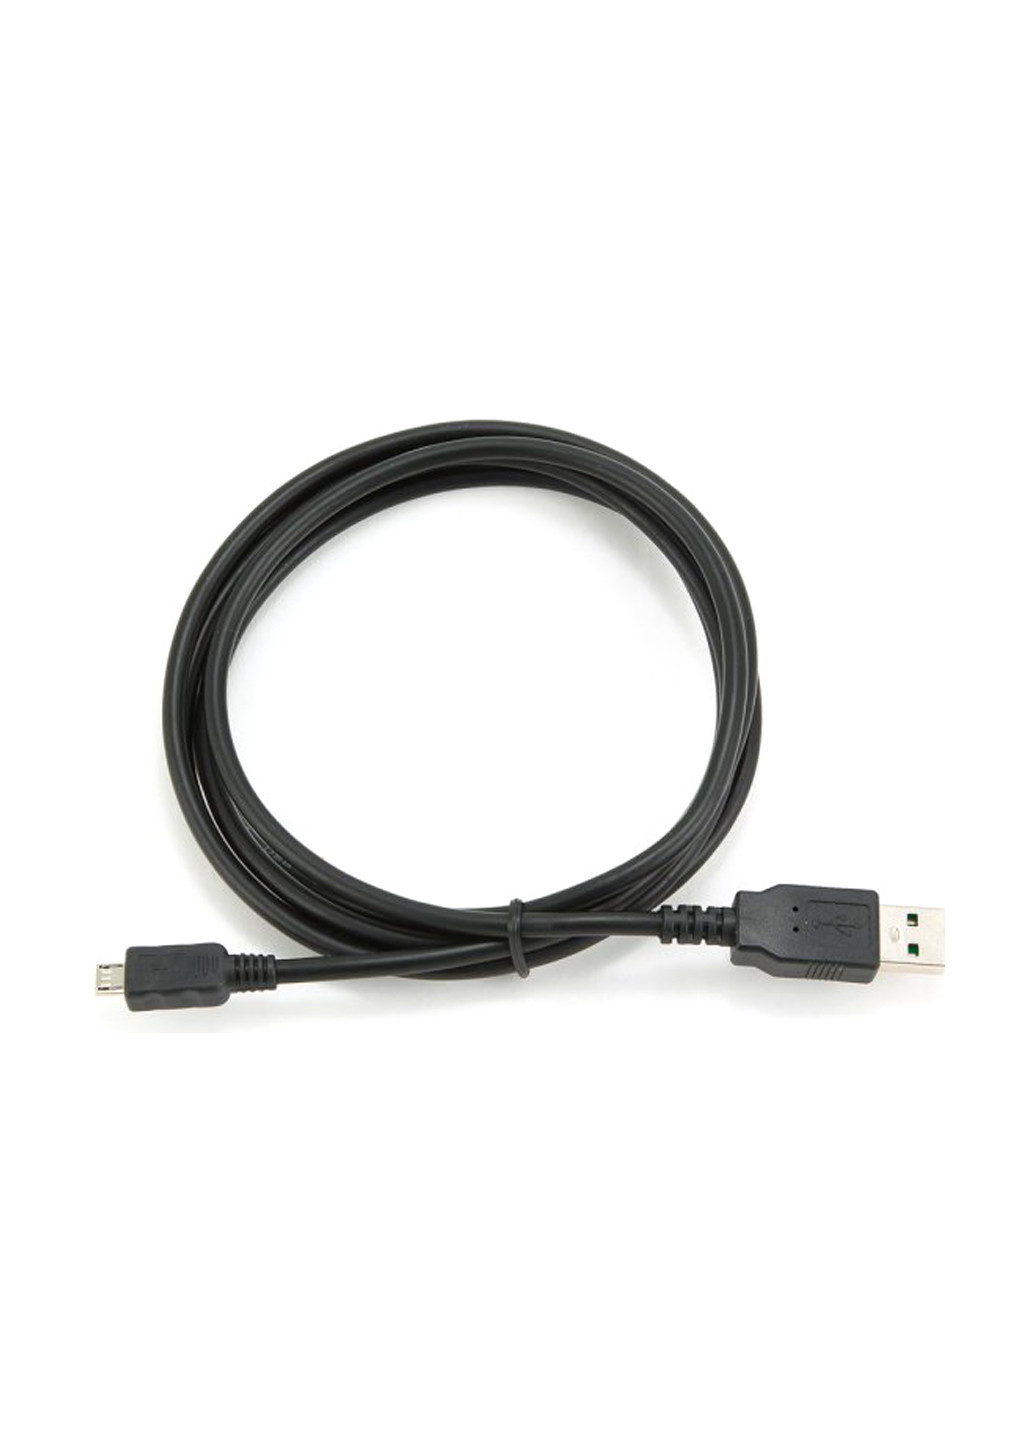 Кабель USB 2.0 A-папа / Micro B-папа, двосторонній роз'єм (CC-mUSB2D-1M) Cablexpert usb 2.0 a-папа/micro b-папа, двусторонний разъем (cc-musb2d-1m) (137703574)